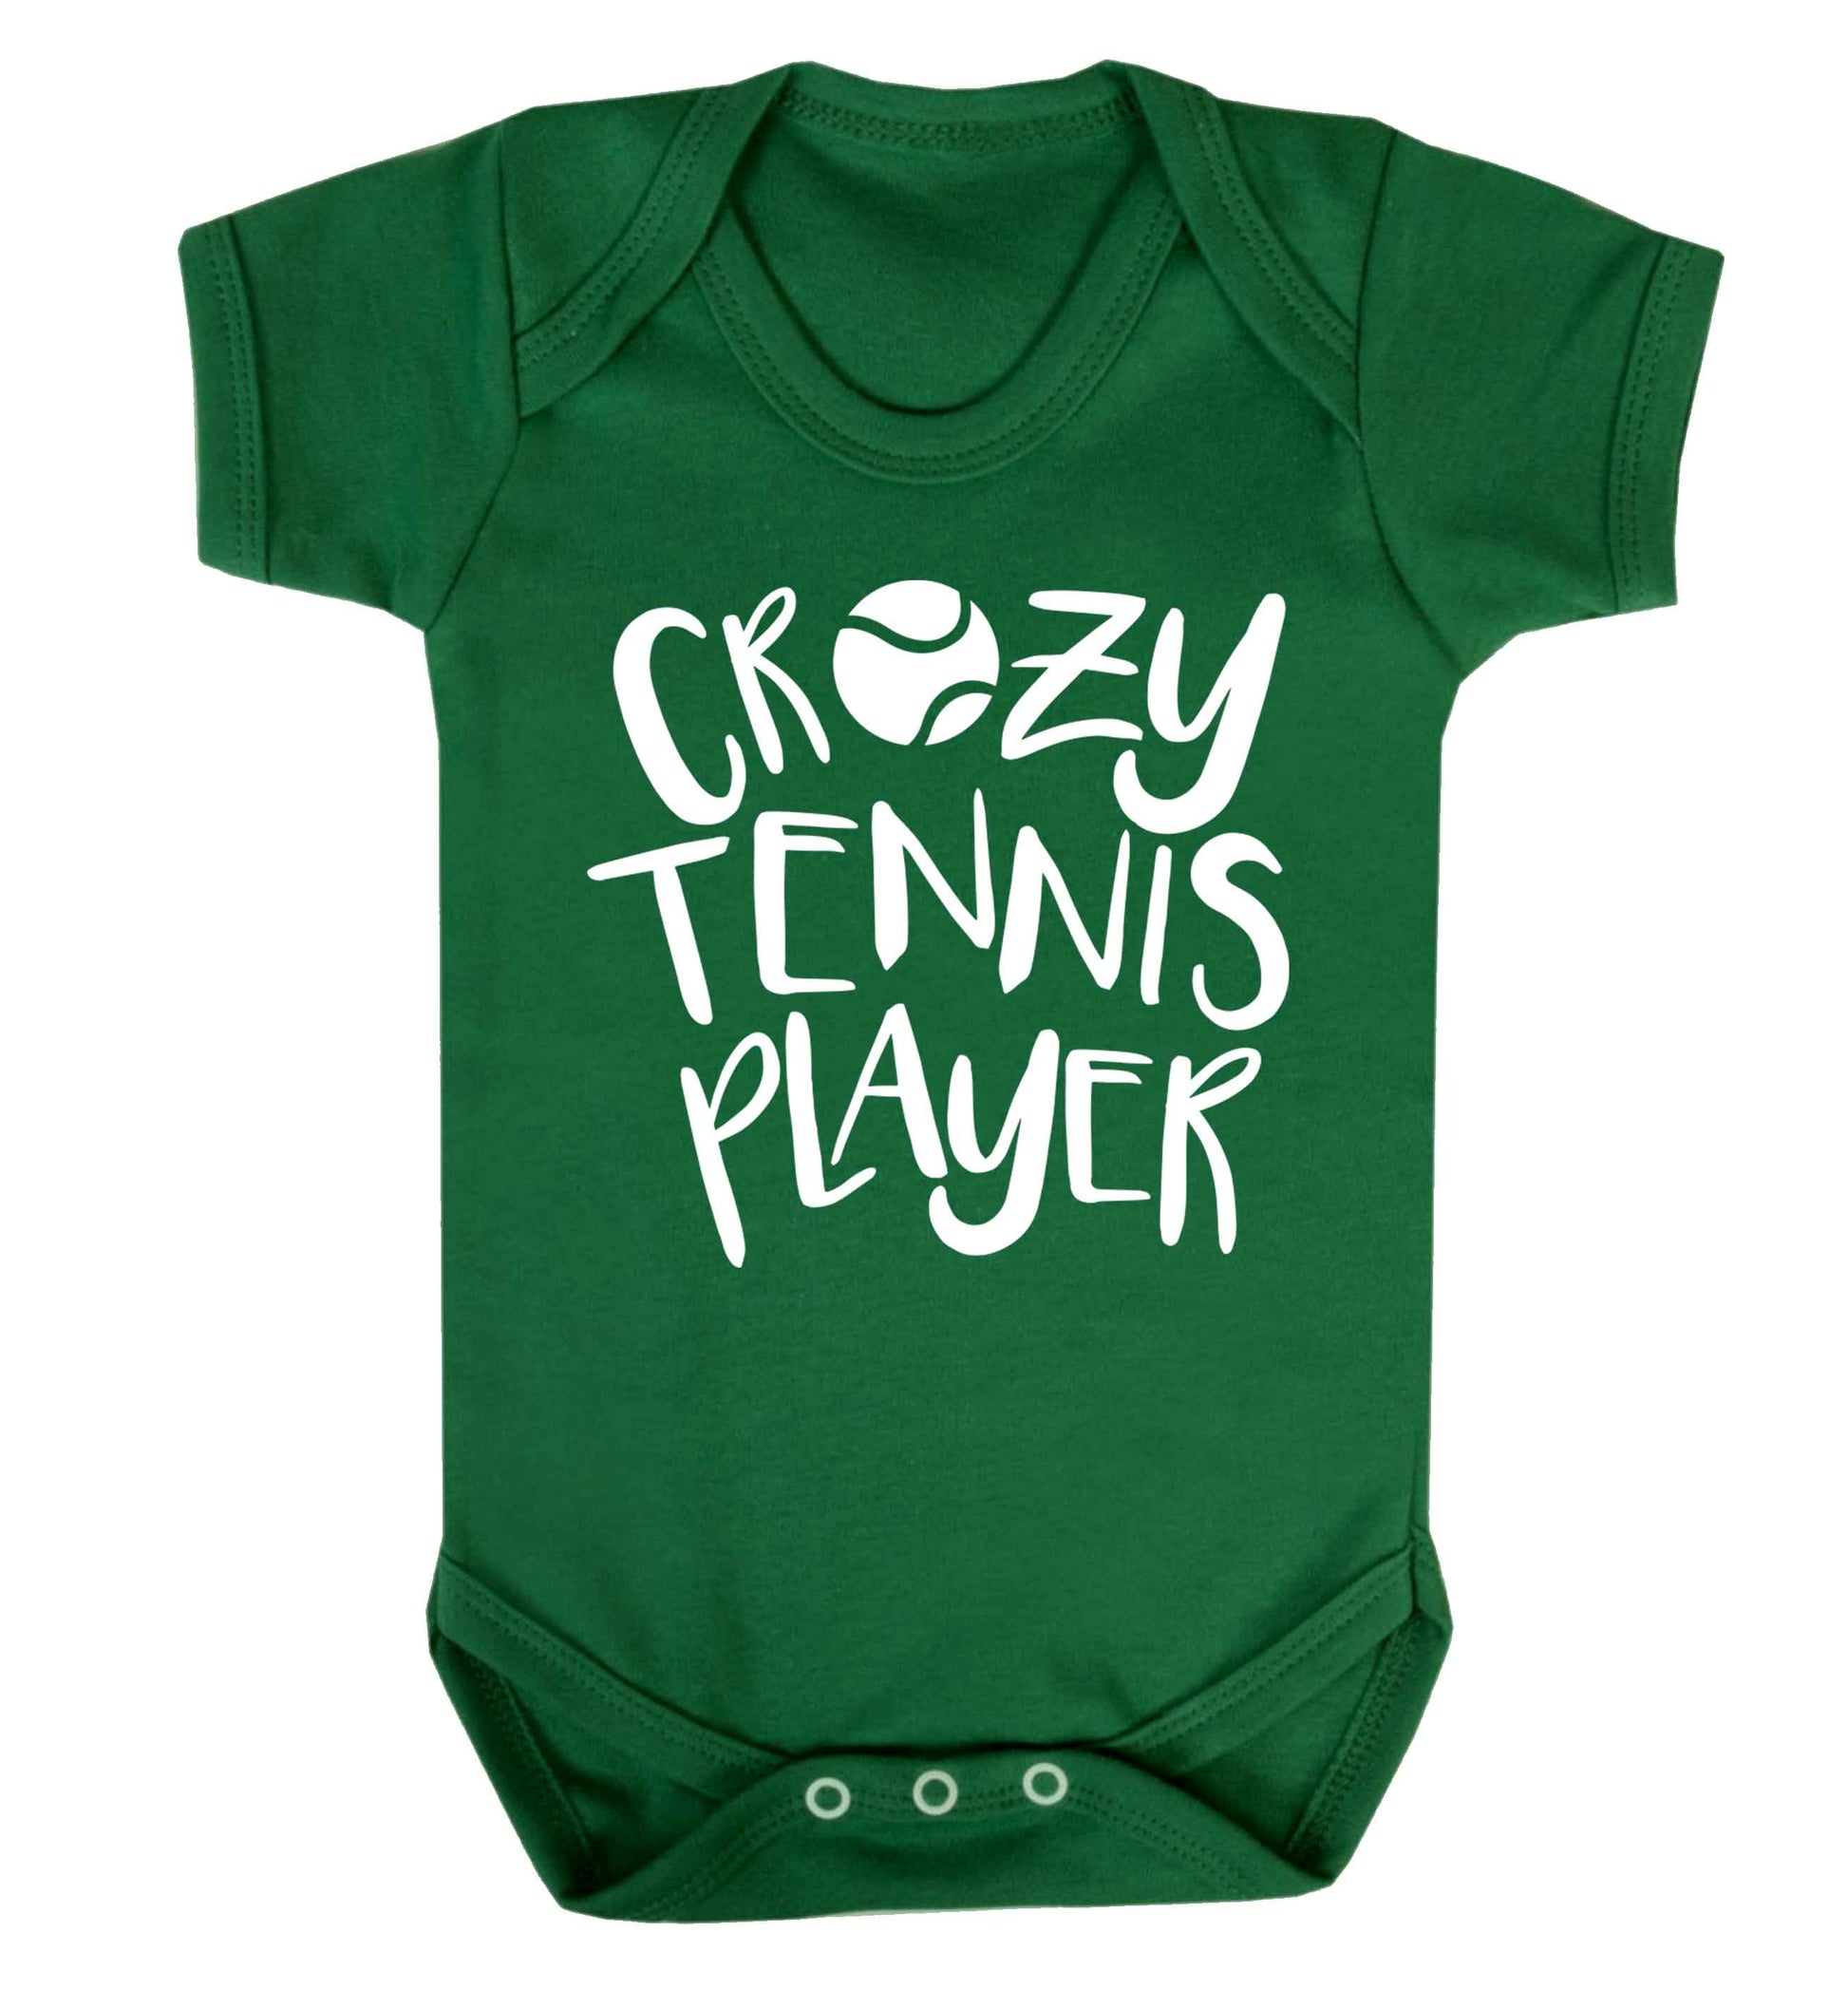 Crazy tennis player Baby Vest green 18-24 months